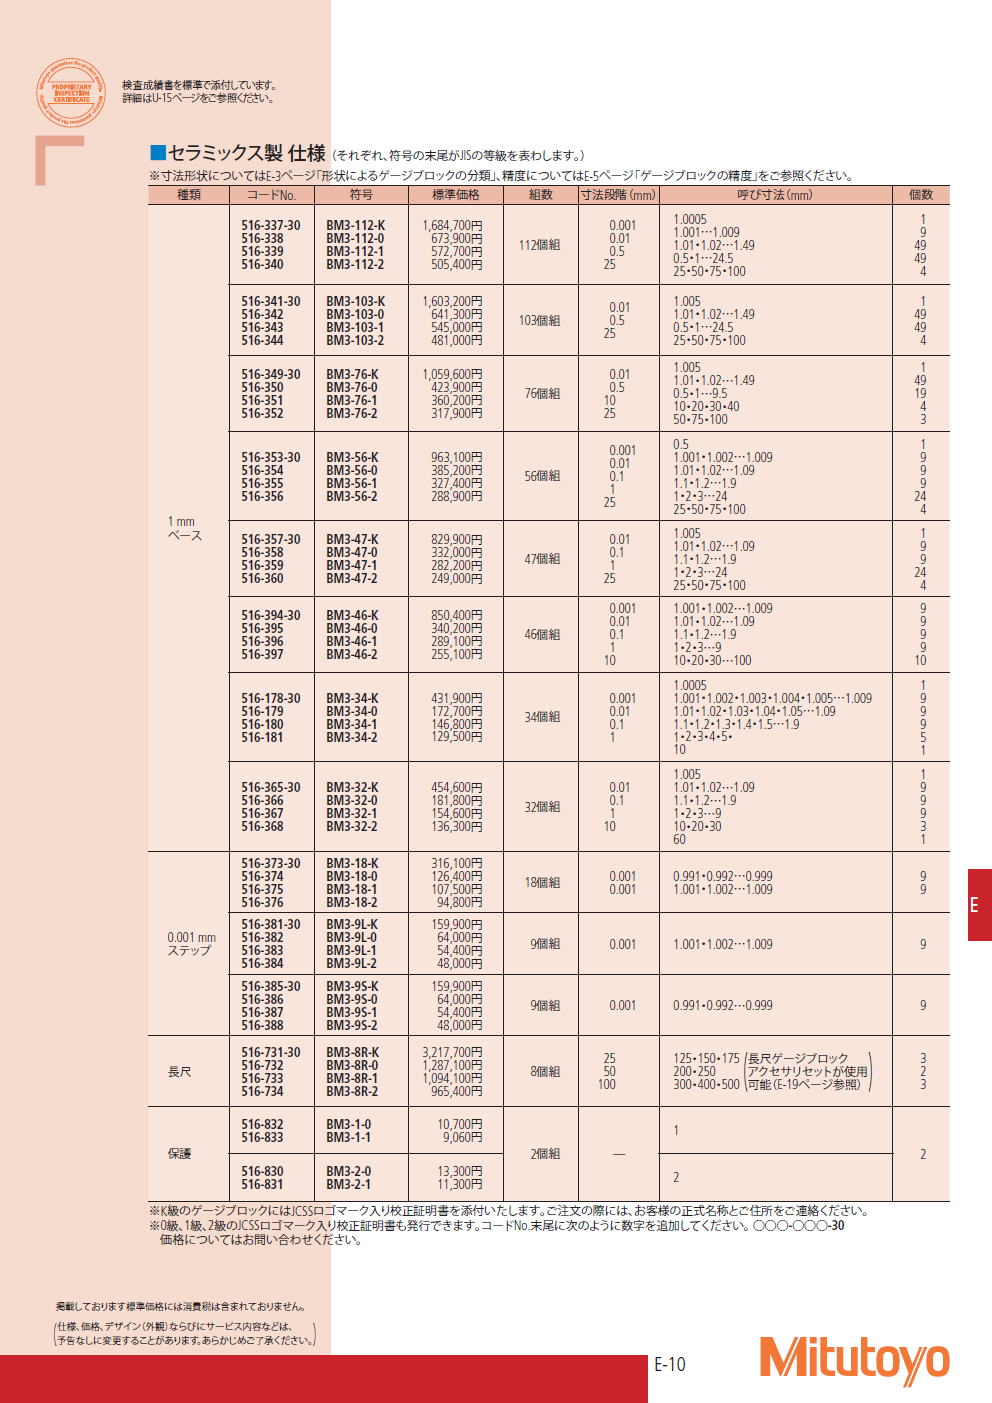 ミツトヨ 516-383 BM3-9L-1 レクタンギュラゲージブロック 標準セット